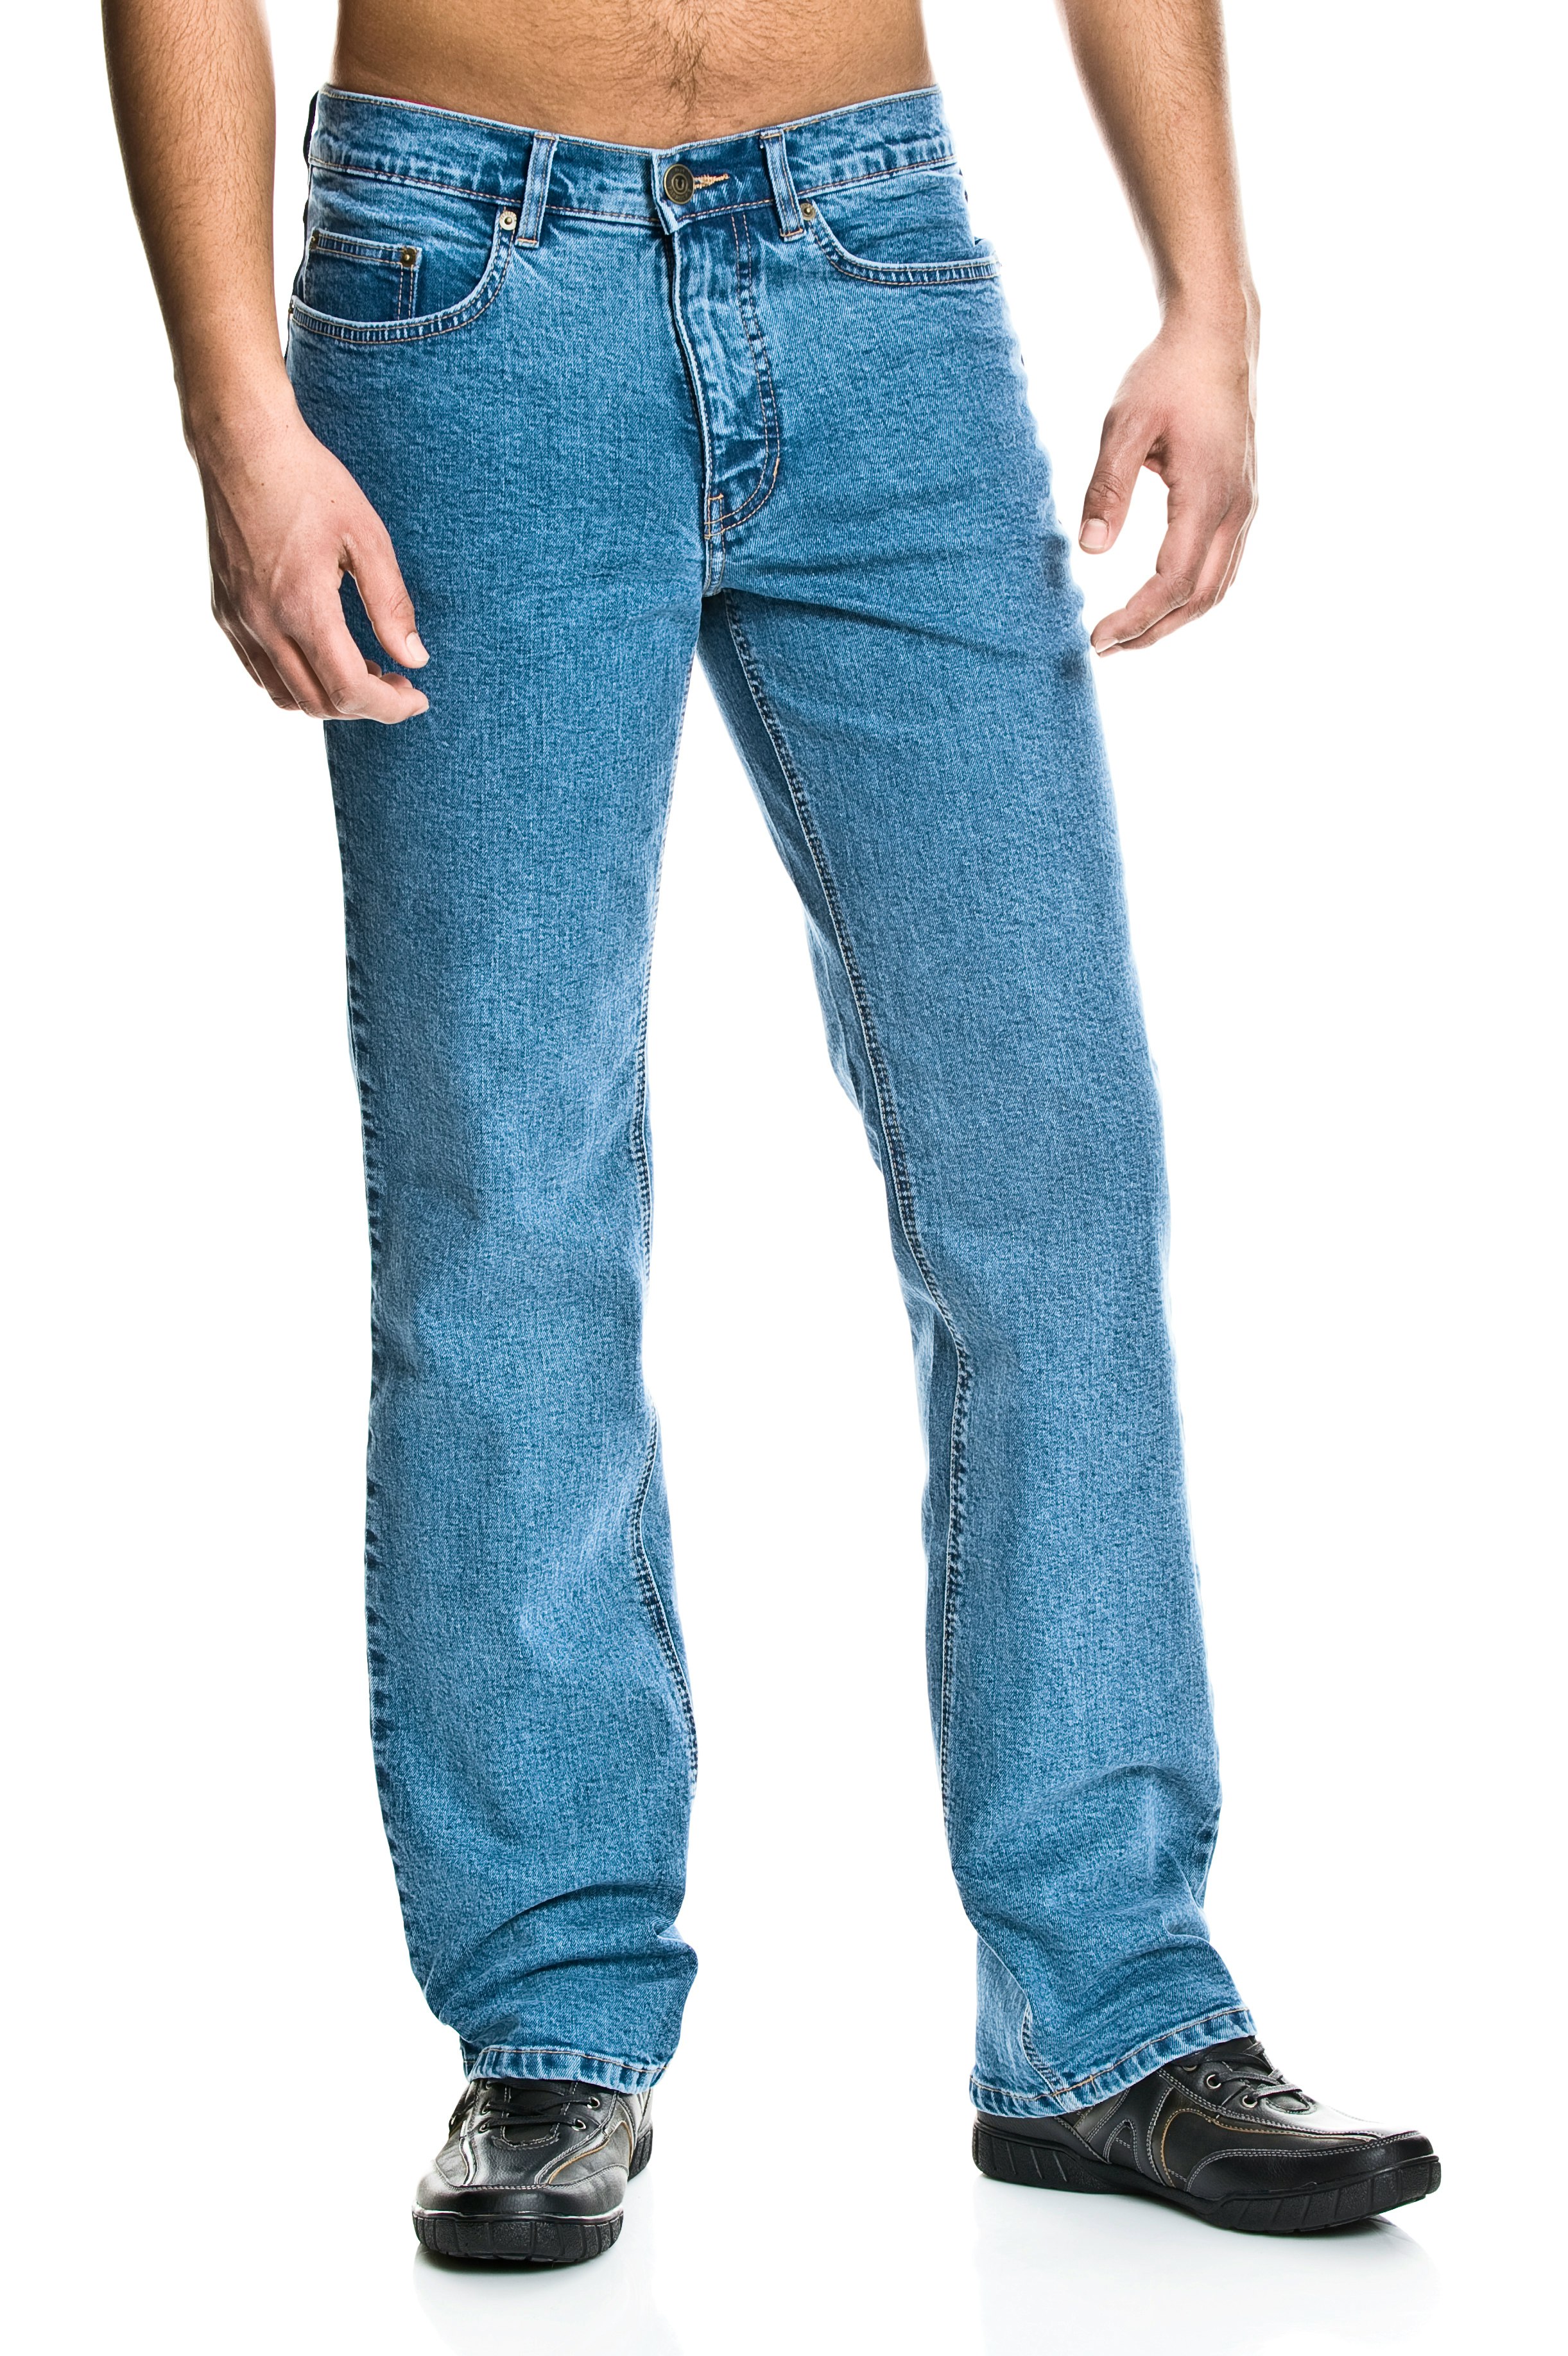 Stretch jeans männer - Die qualitativsten Stretch jeans männer im Überblick!